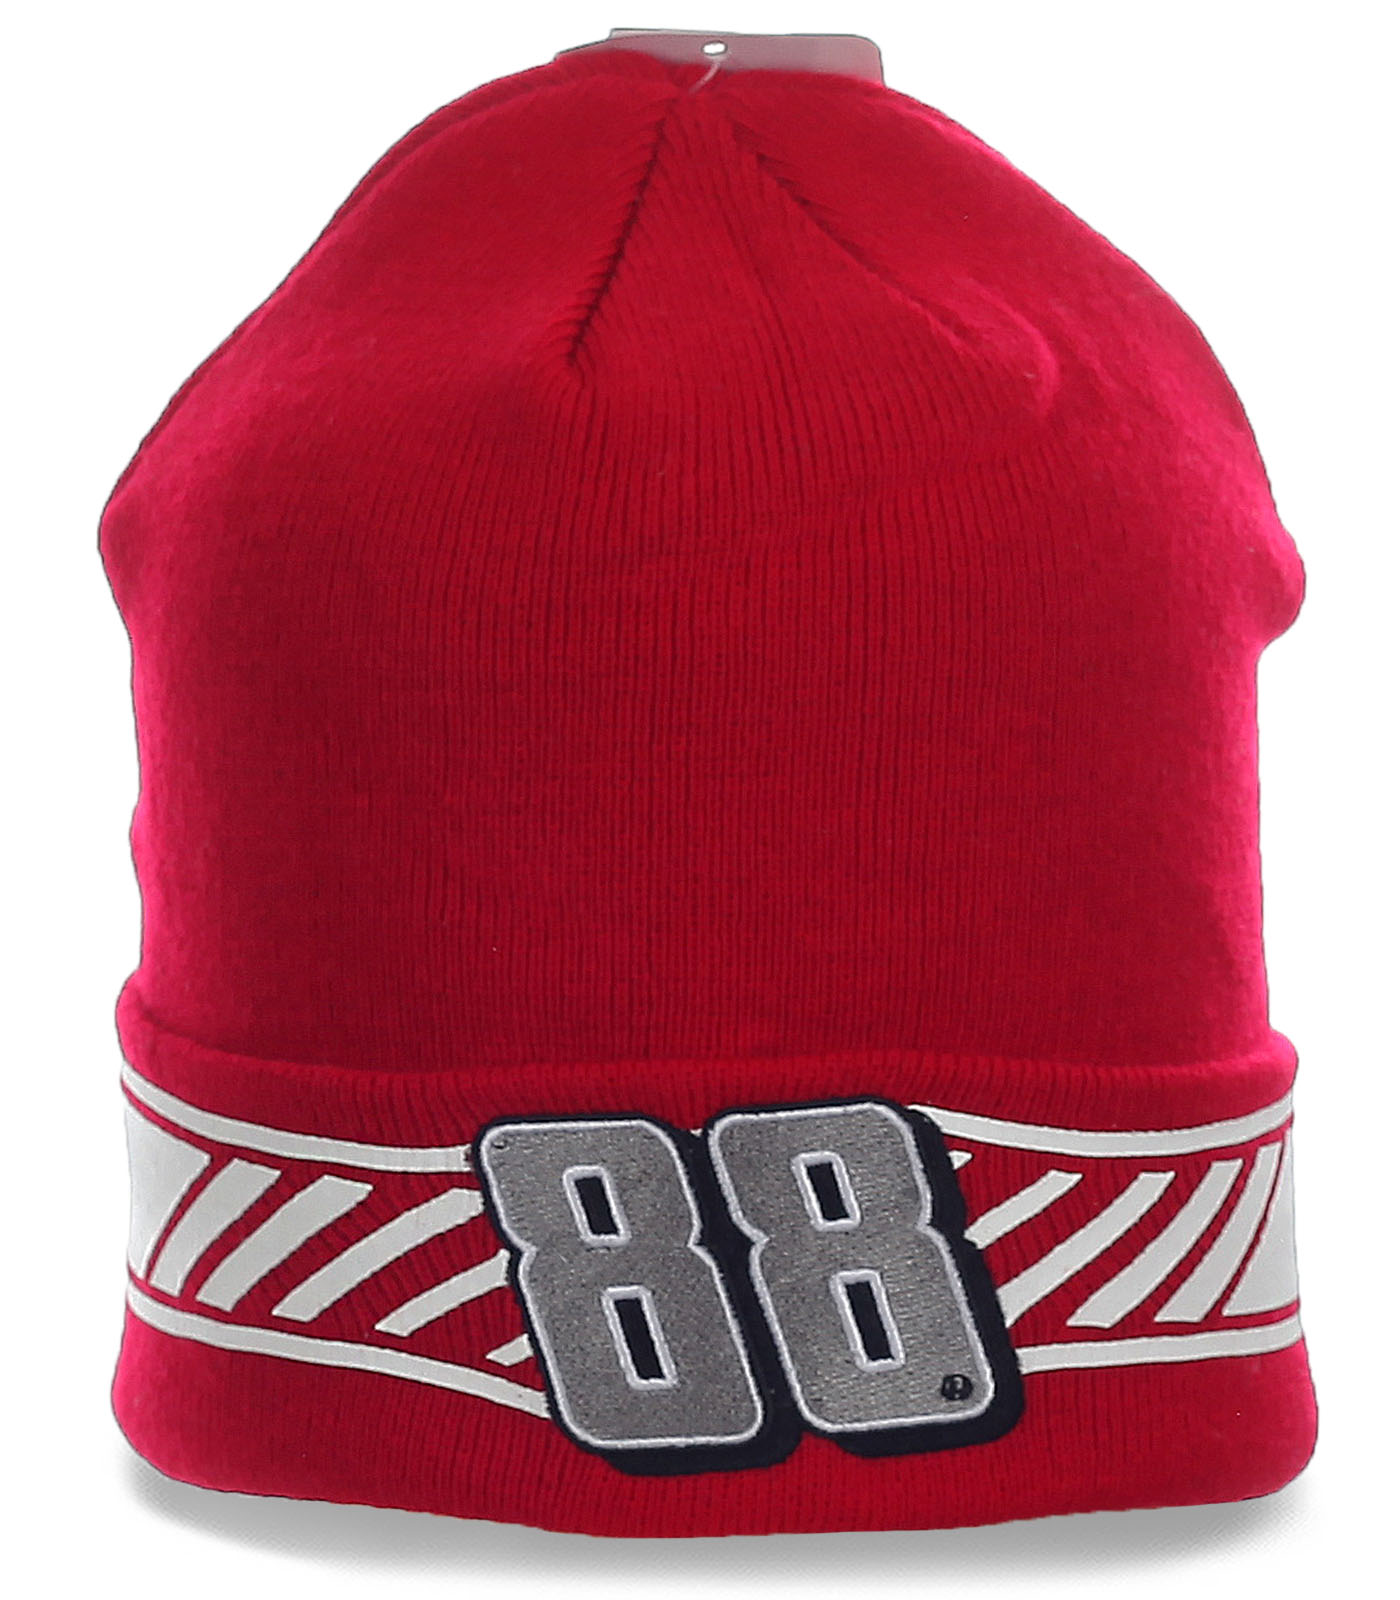 Заказать красную спортивную мужскую шапку с отворотом  Две восьмерки фанатам зимнего спорта по стандартной цене